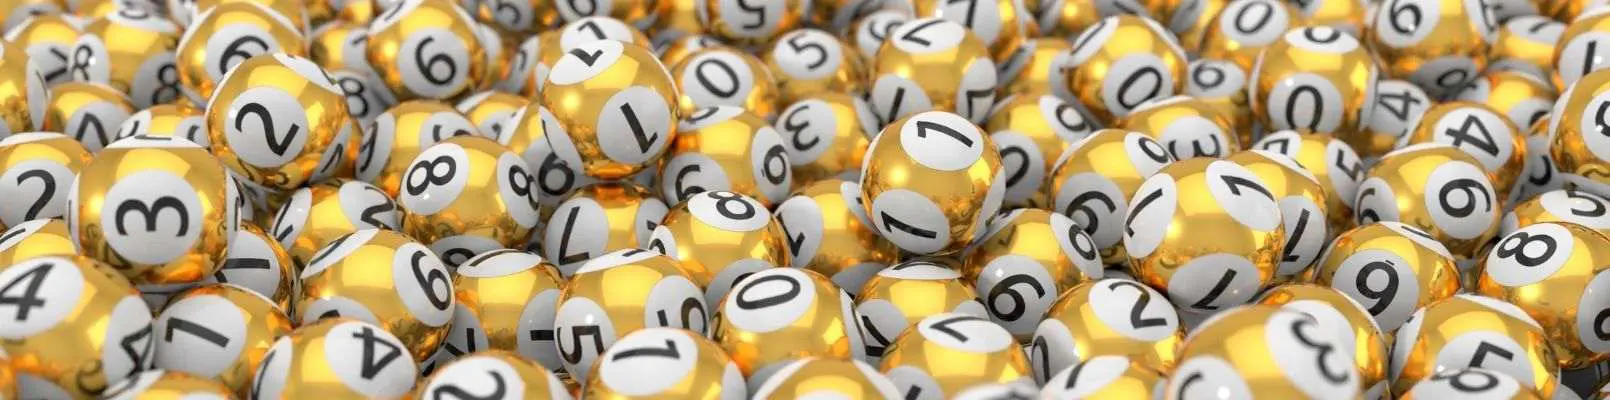 combinatii numere norocoase loterii